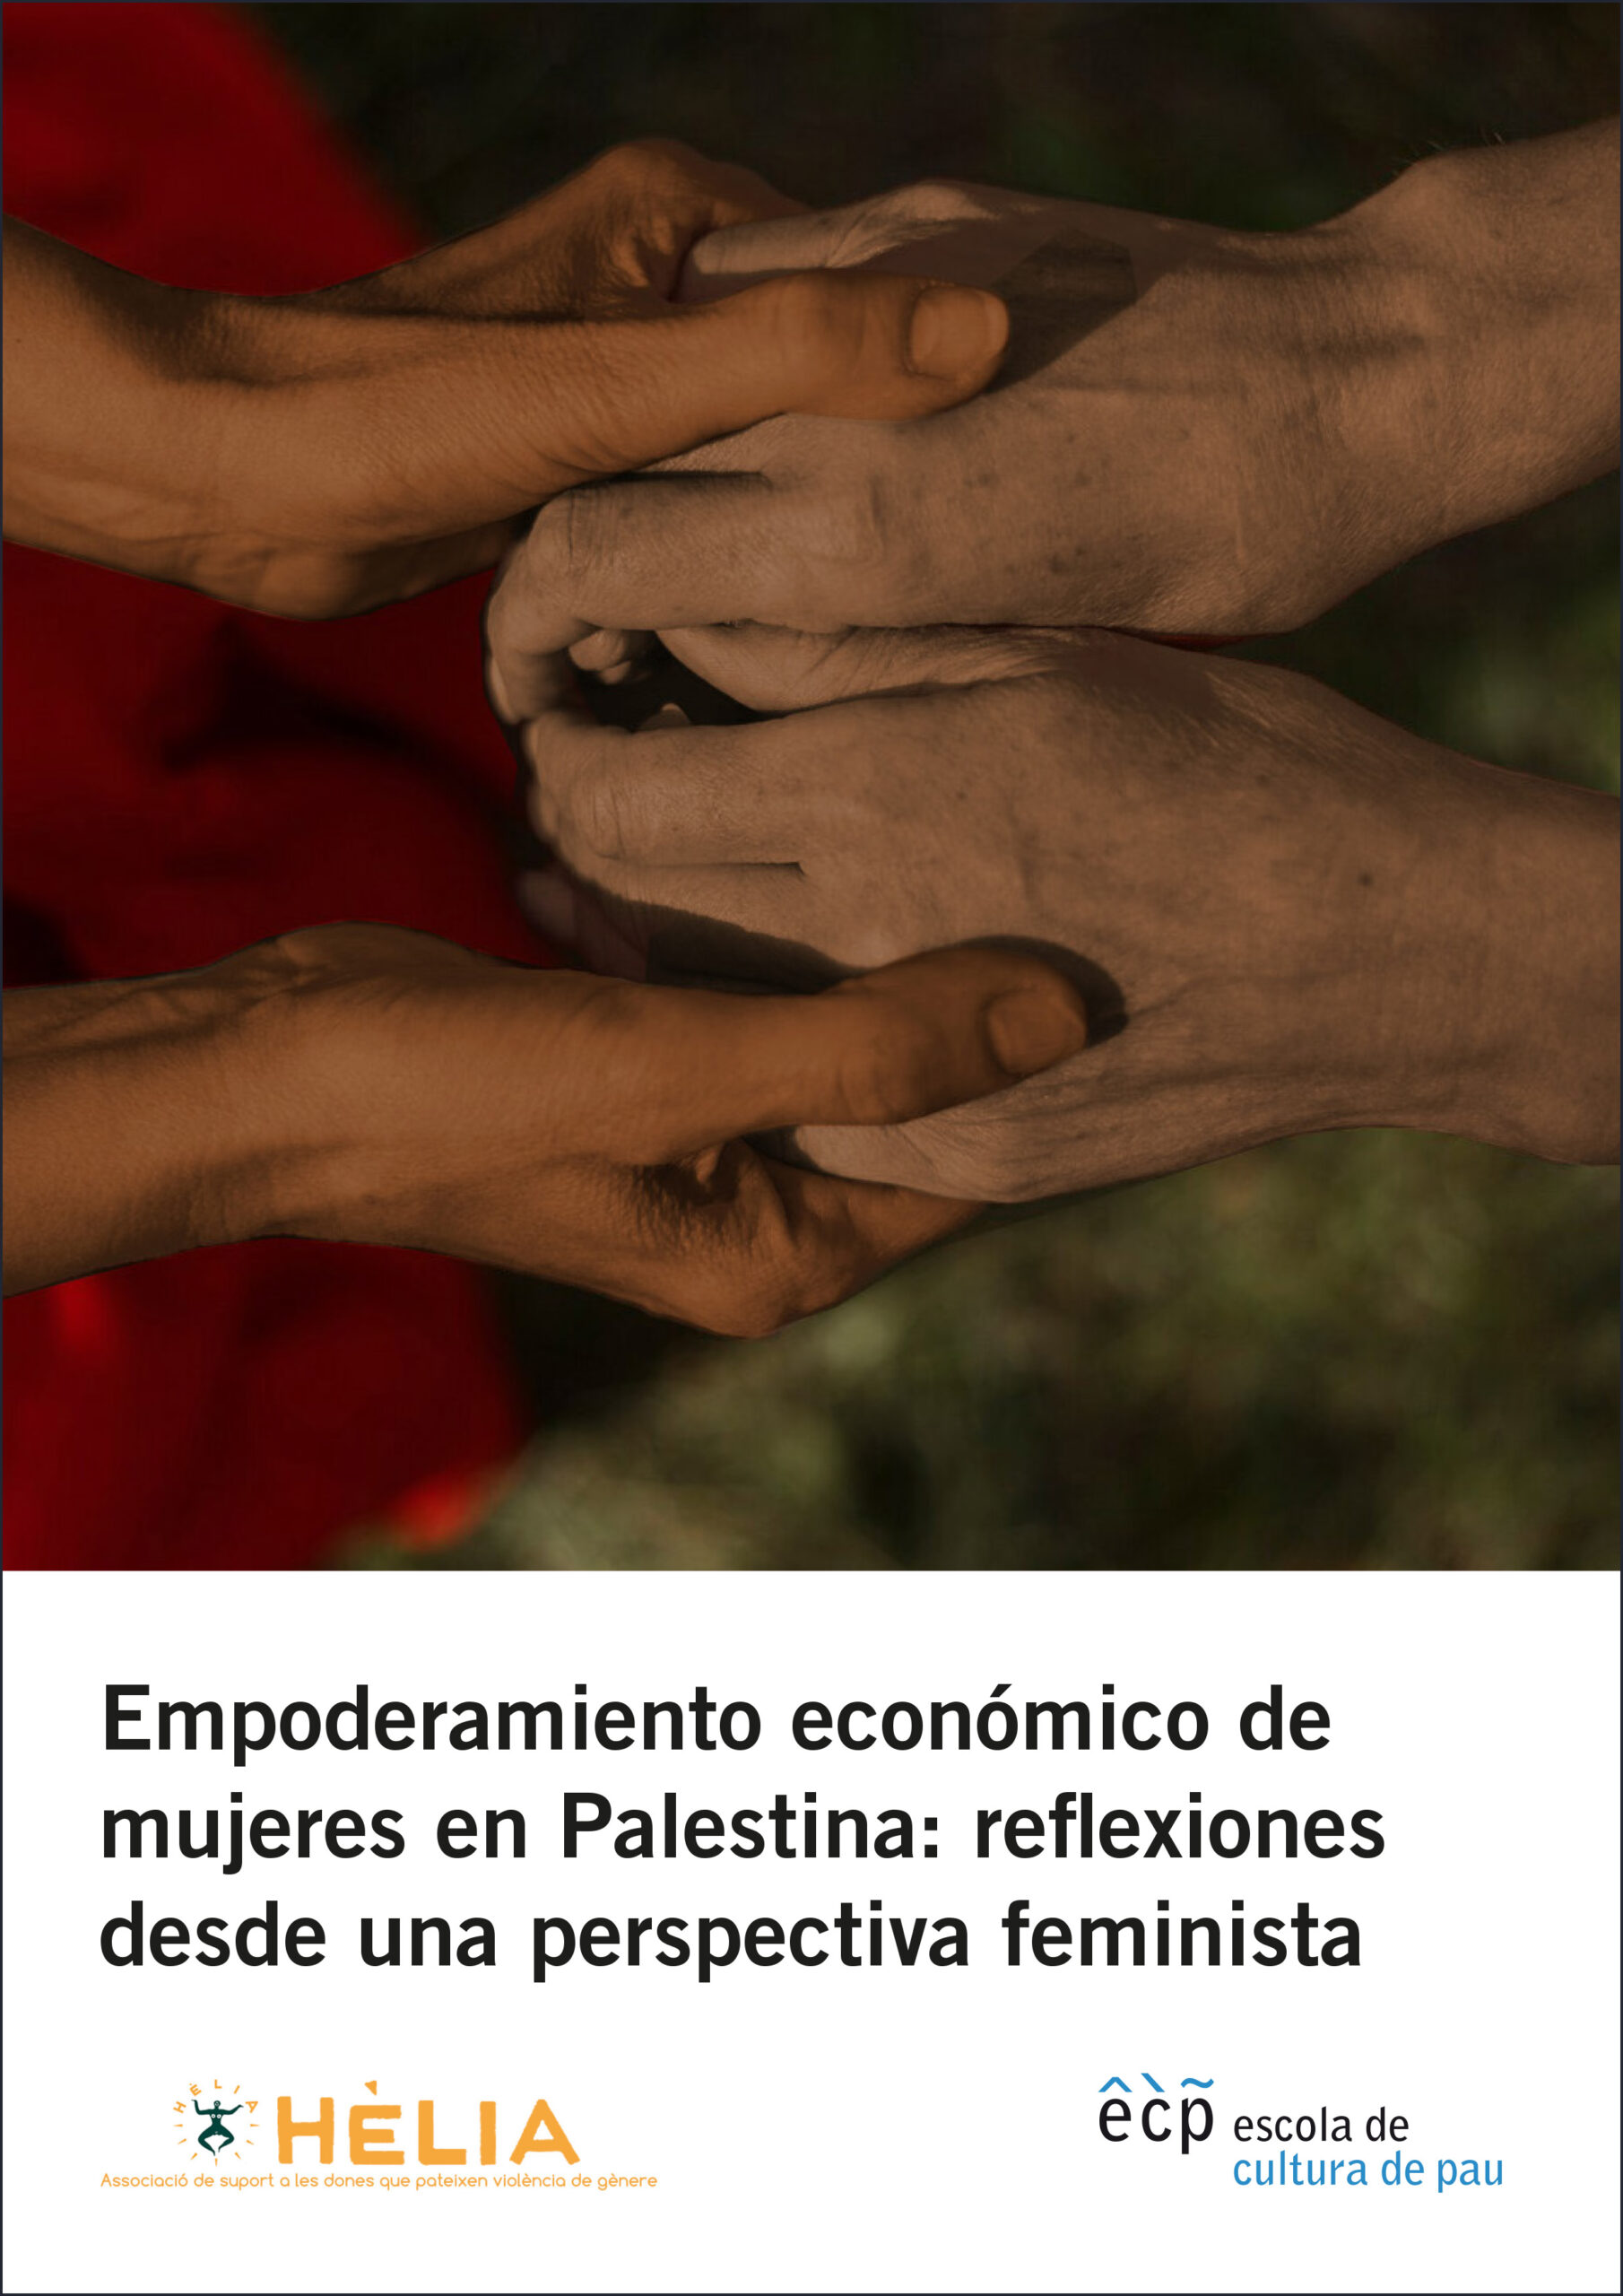 Empoderamiento económico de mujeres en Palestina: reflexiones desde una perspectiva feminista